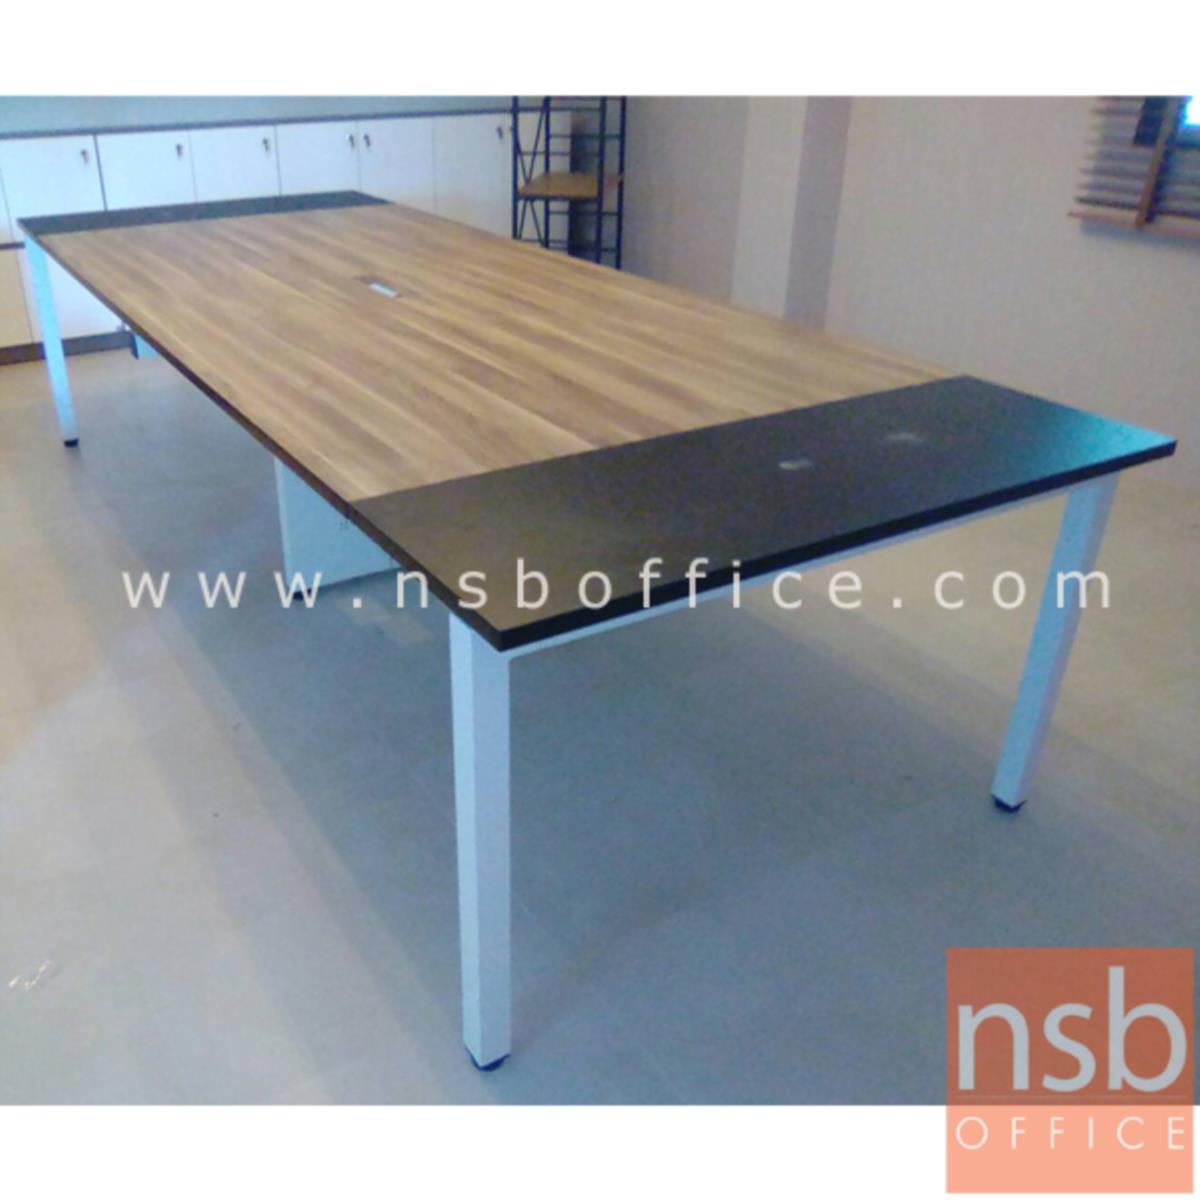 โต๊ะประชุมทรงสี่เหลี่ยม 120D cm. รุ่น CONNEXX-021  ขากลางมีกล่องร้อยสายไฟ